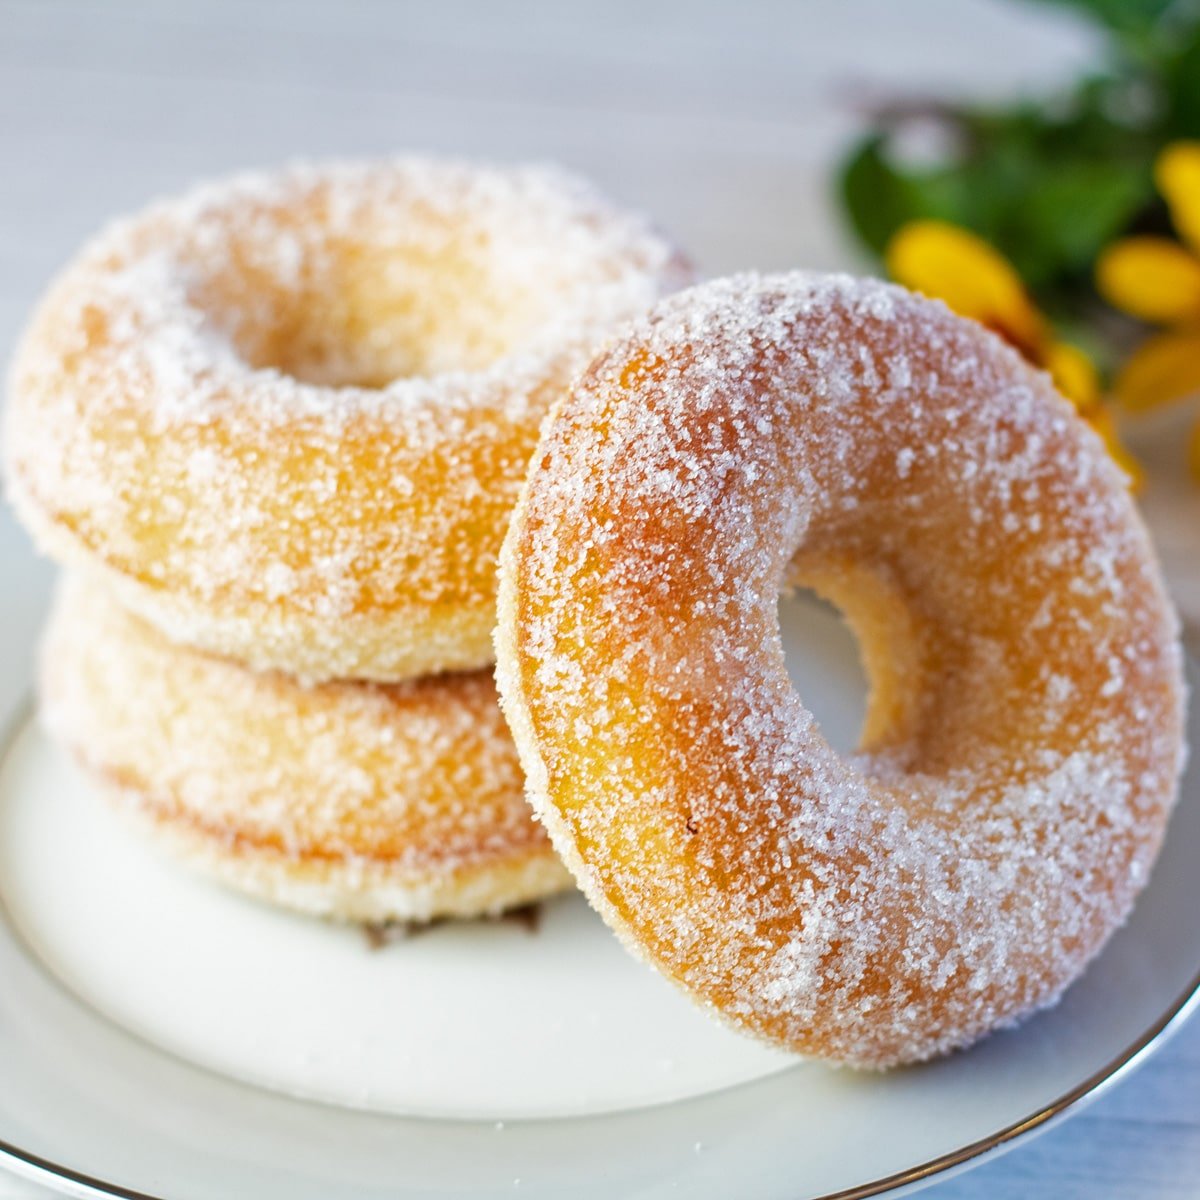 Vierkant beeld van met citroensuiker gebakken donuts op een kleine witte plaat.